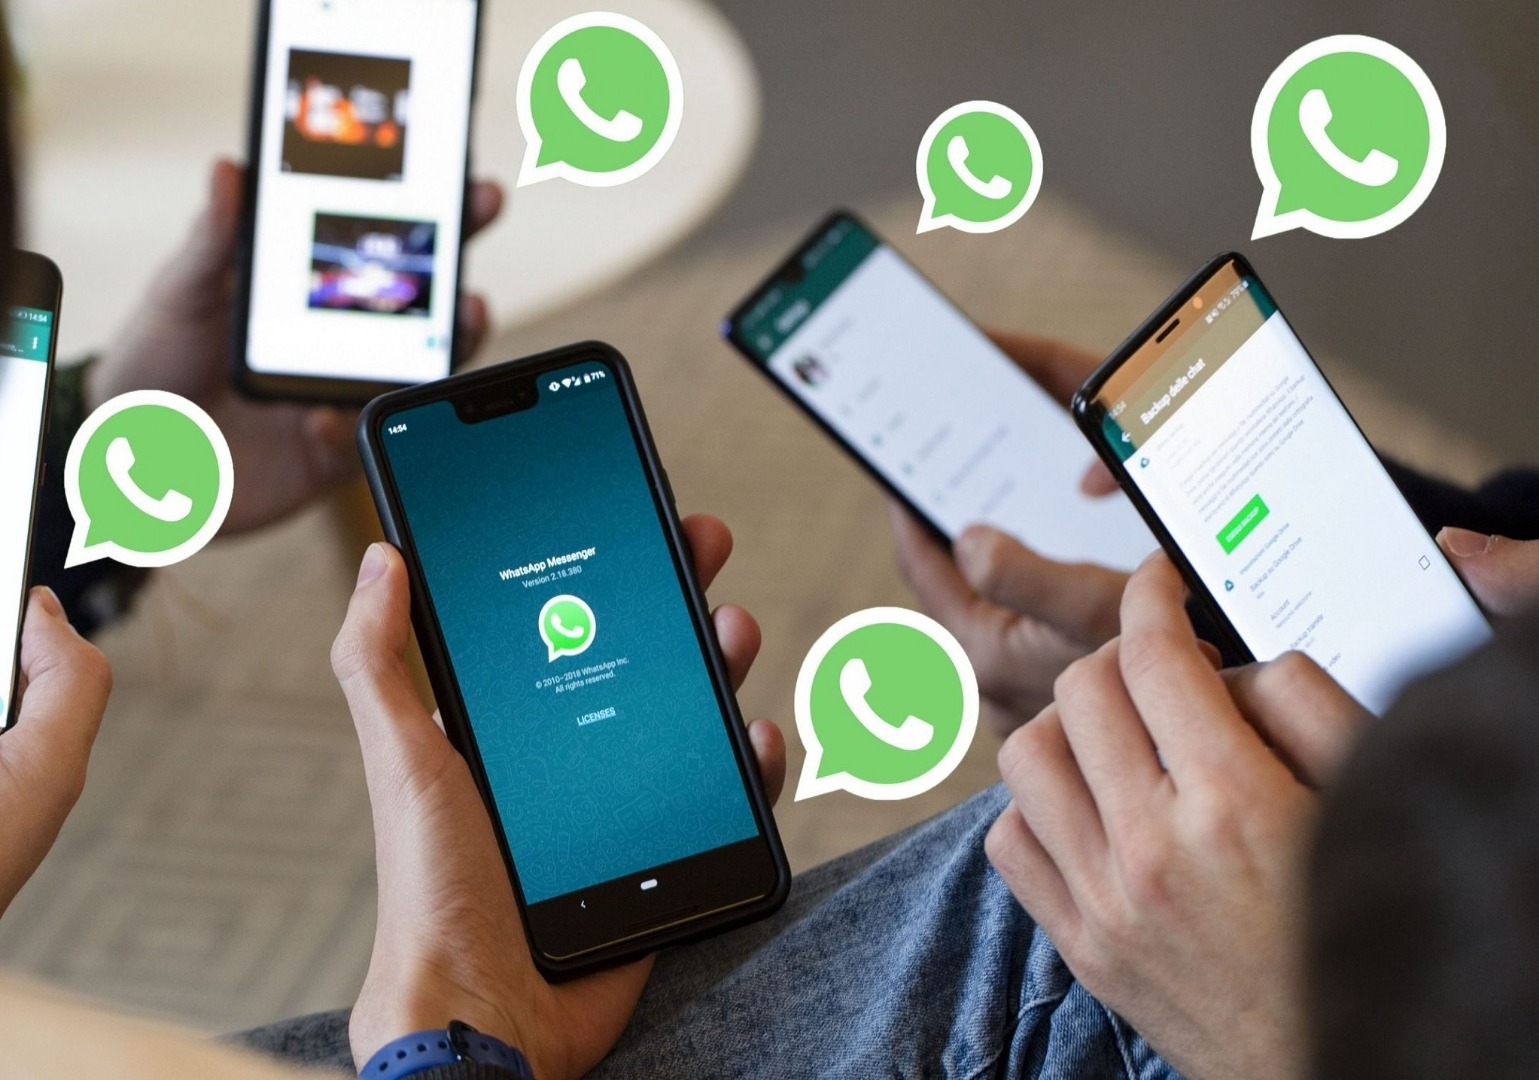 WhatsApp'ın yeni özelliği ne? WhatsApp'ın yeni son kullanma tarihi nedir?